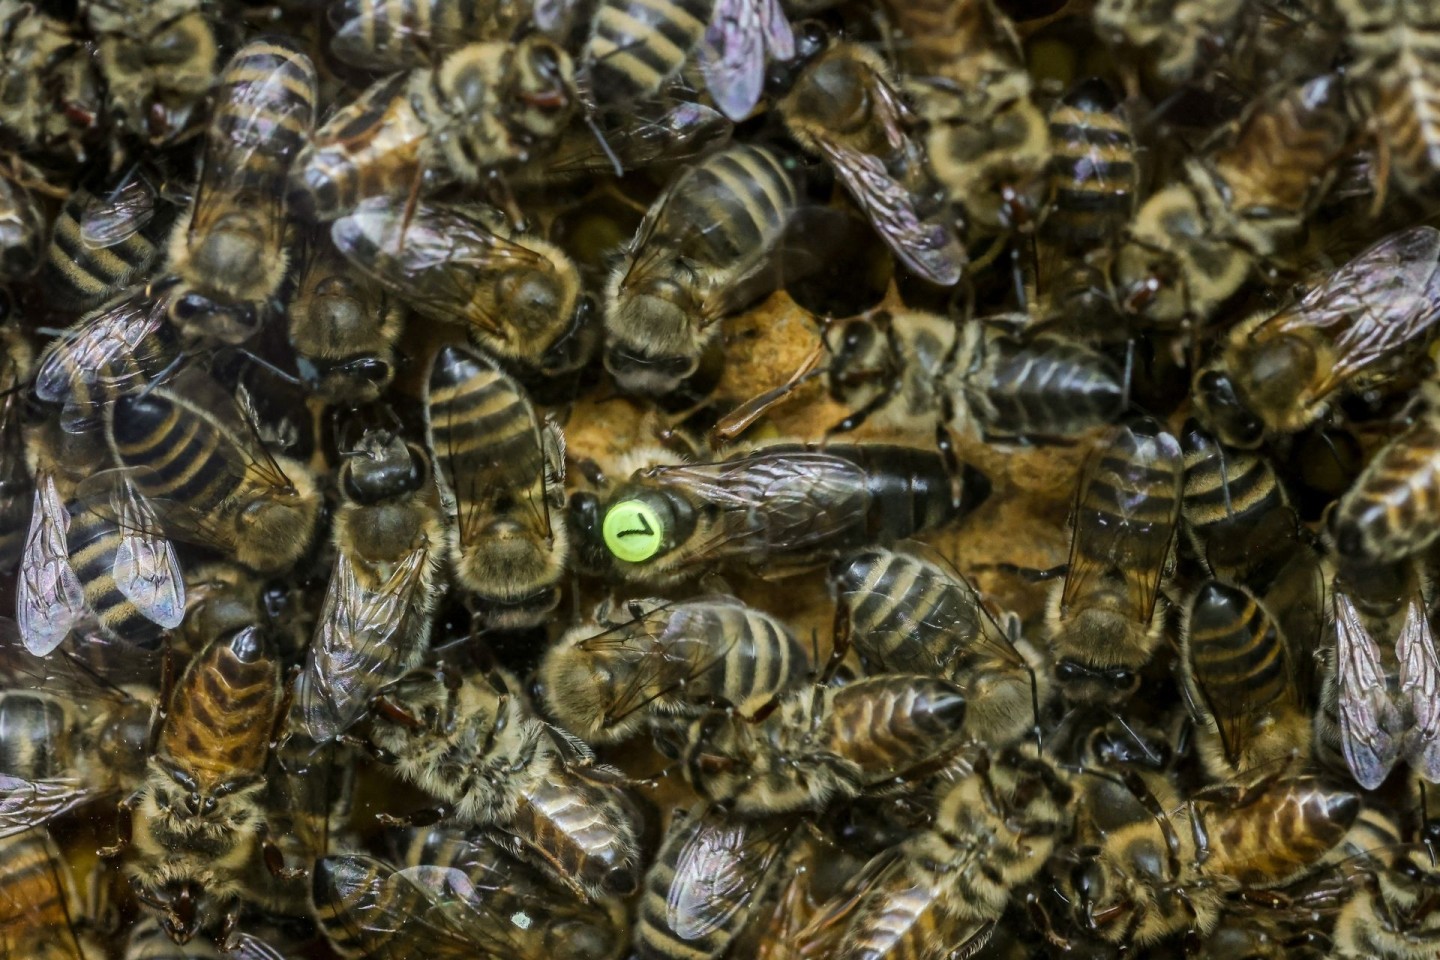 Bienen in einem Begattungskasten im Bienenzuchtzentrum Bantin. Die Bienenkönigin trägt ein Plättchen samt Zuchtbuchnummer.